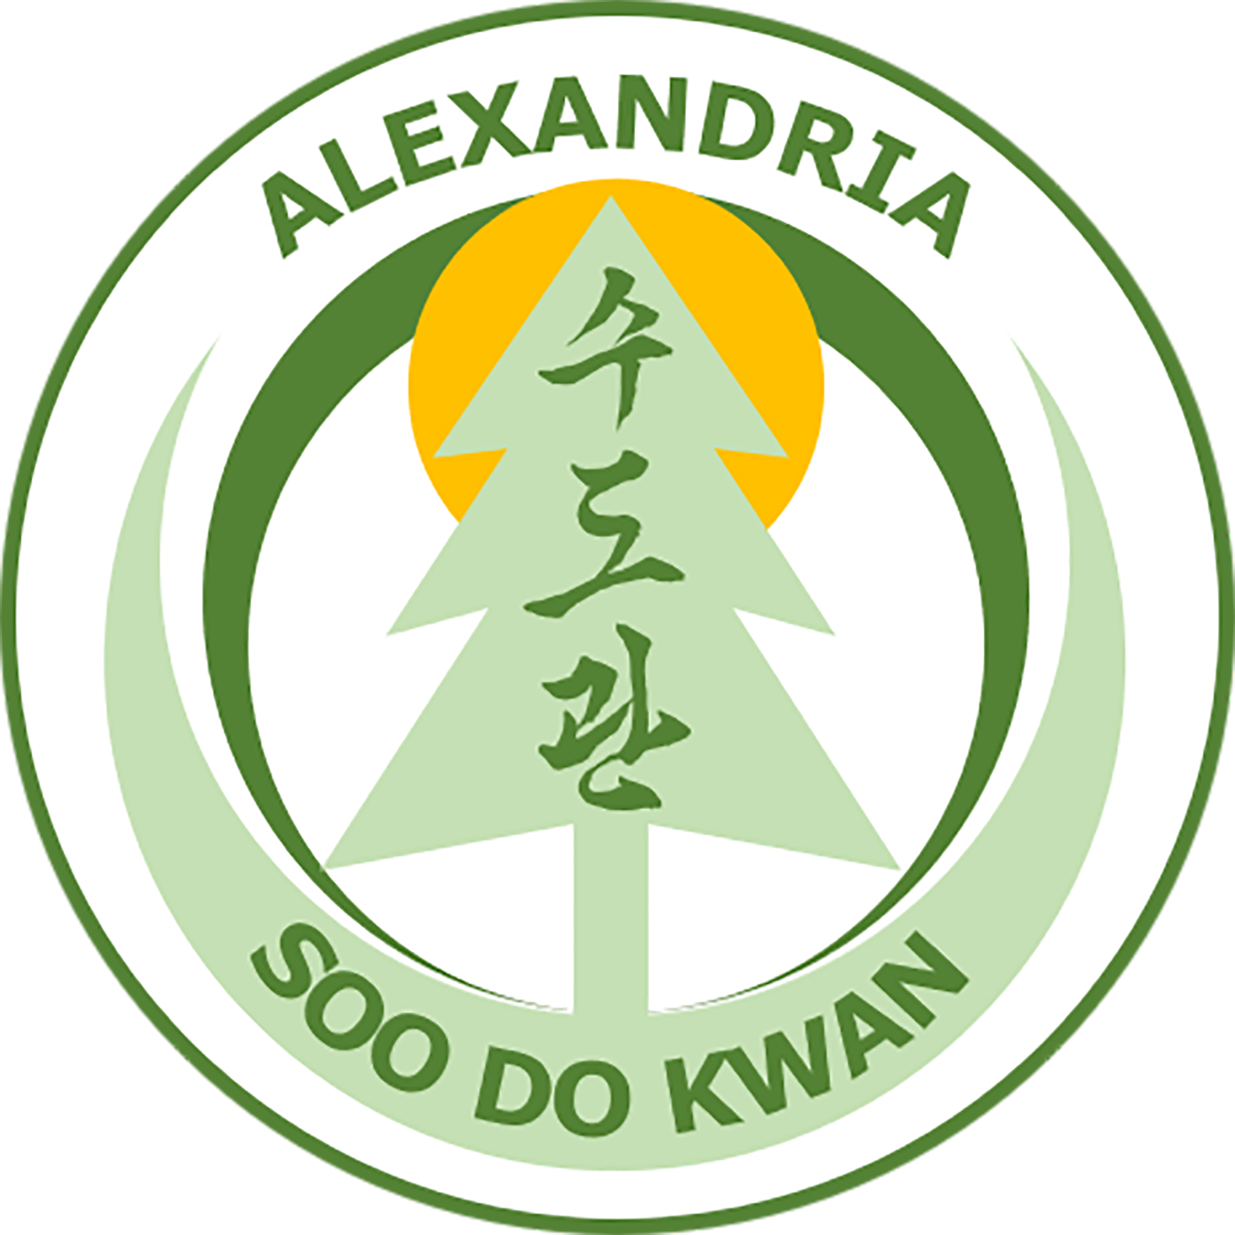 Alexandria Soo Do Kwan